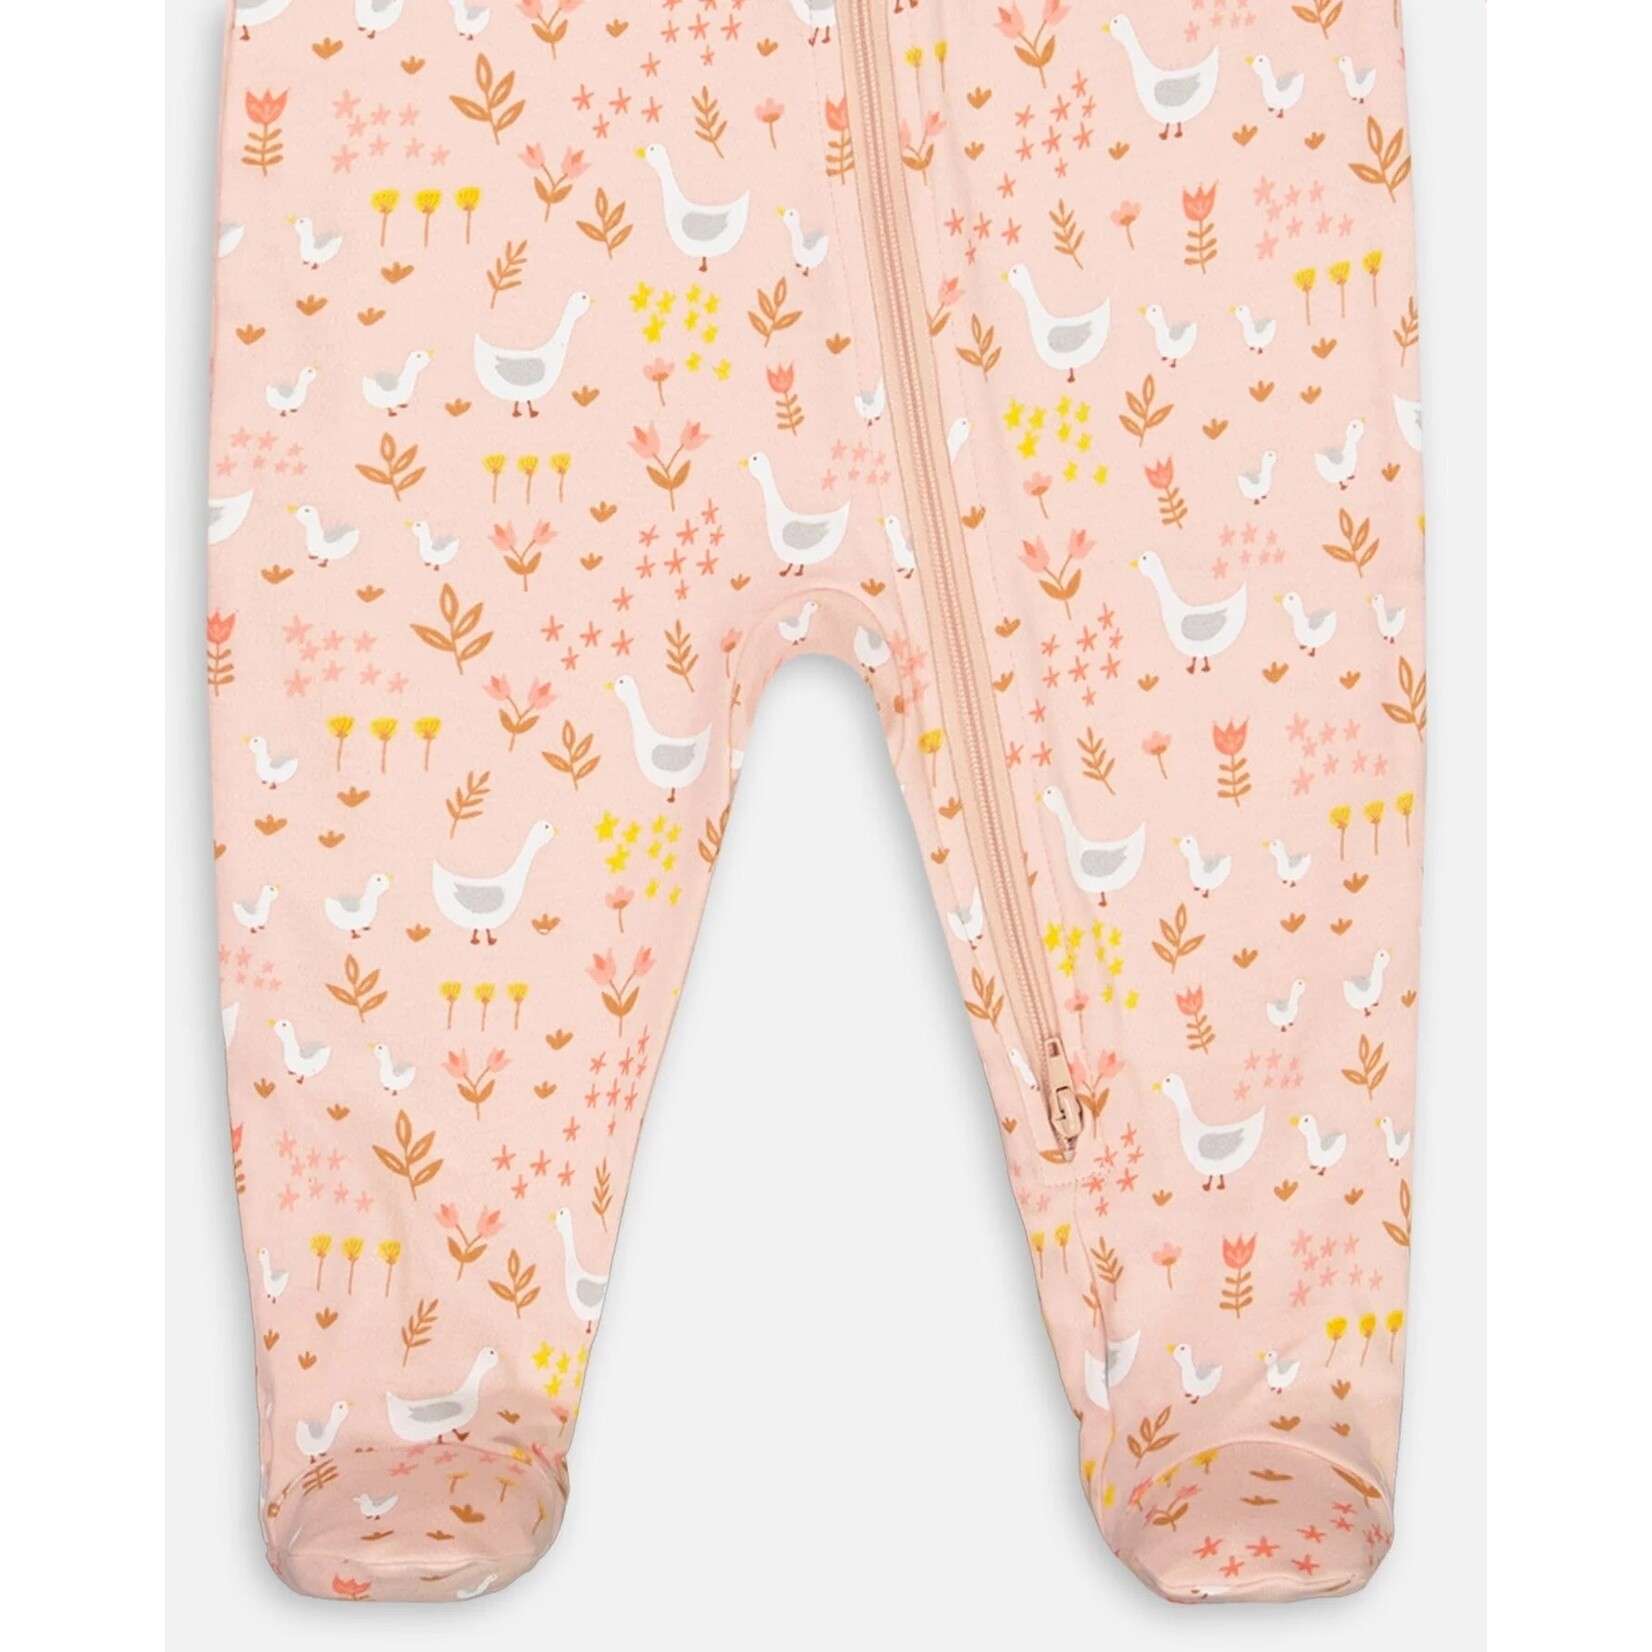 Deux par Deux DEUX PAR DEUX - Organic Cotton Baby Pyjamas in Pink with Geese Print